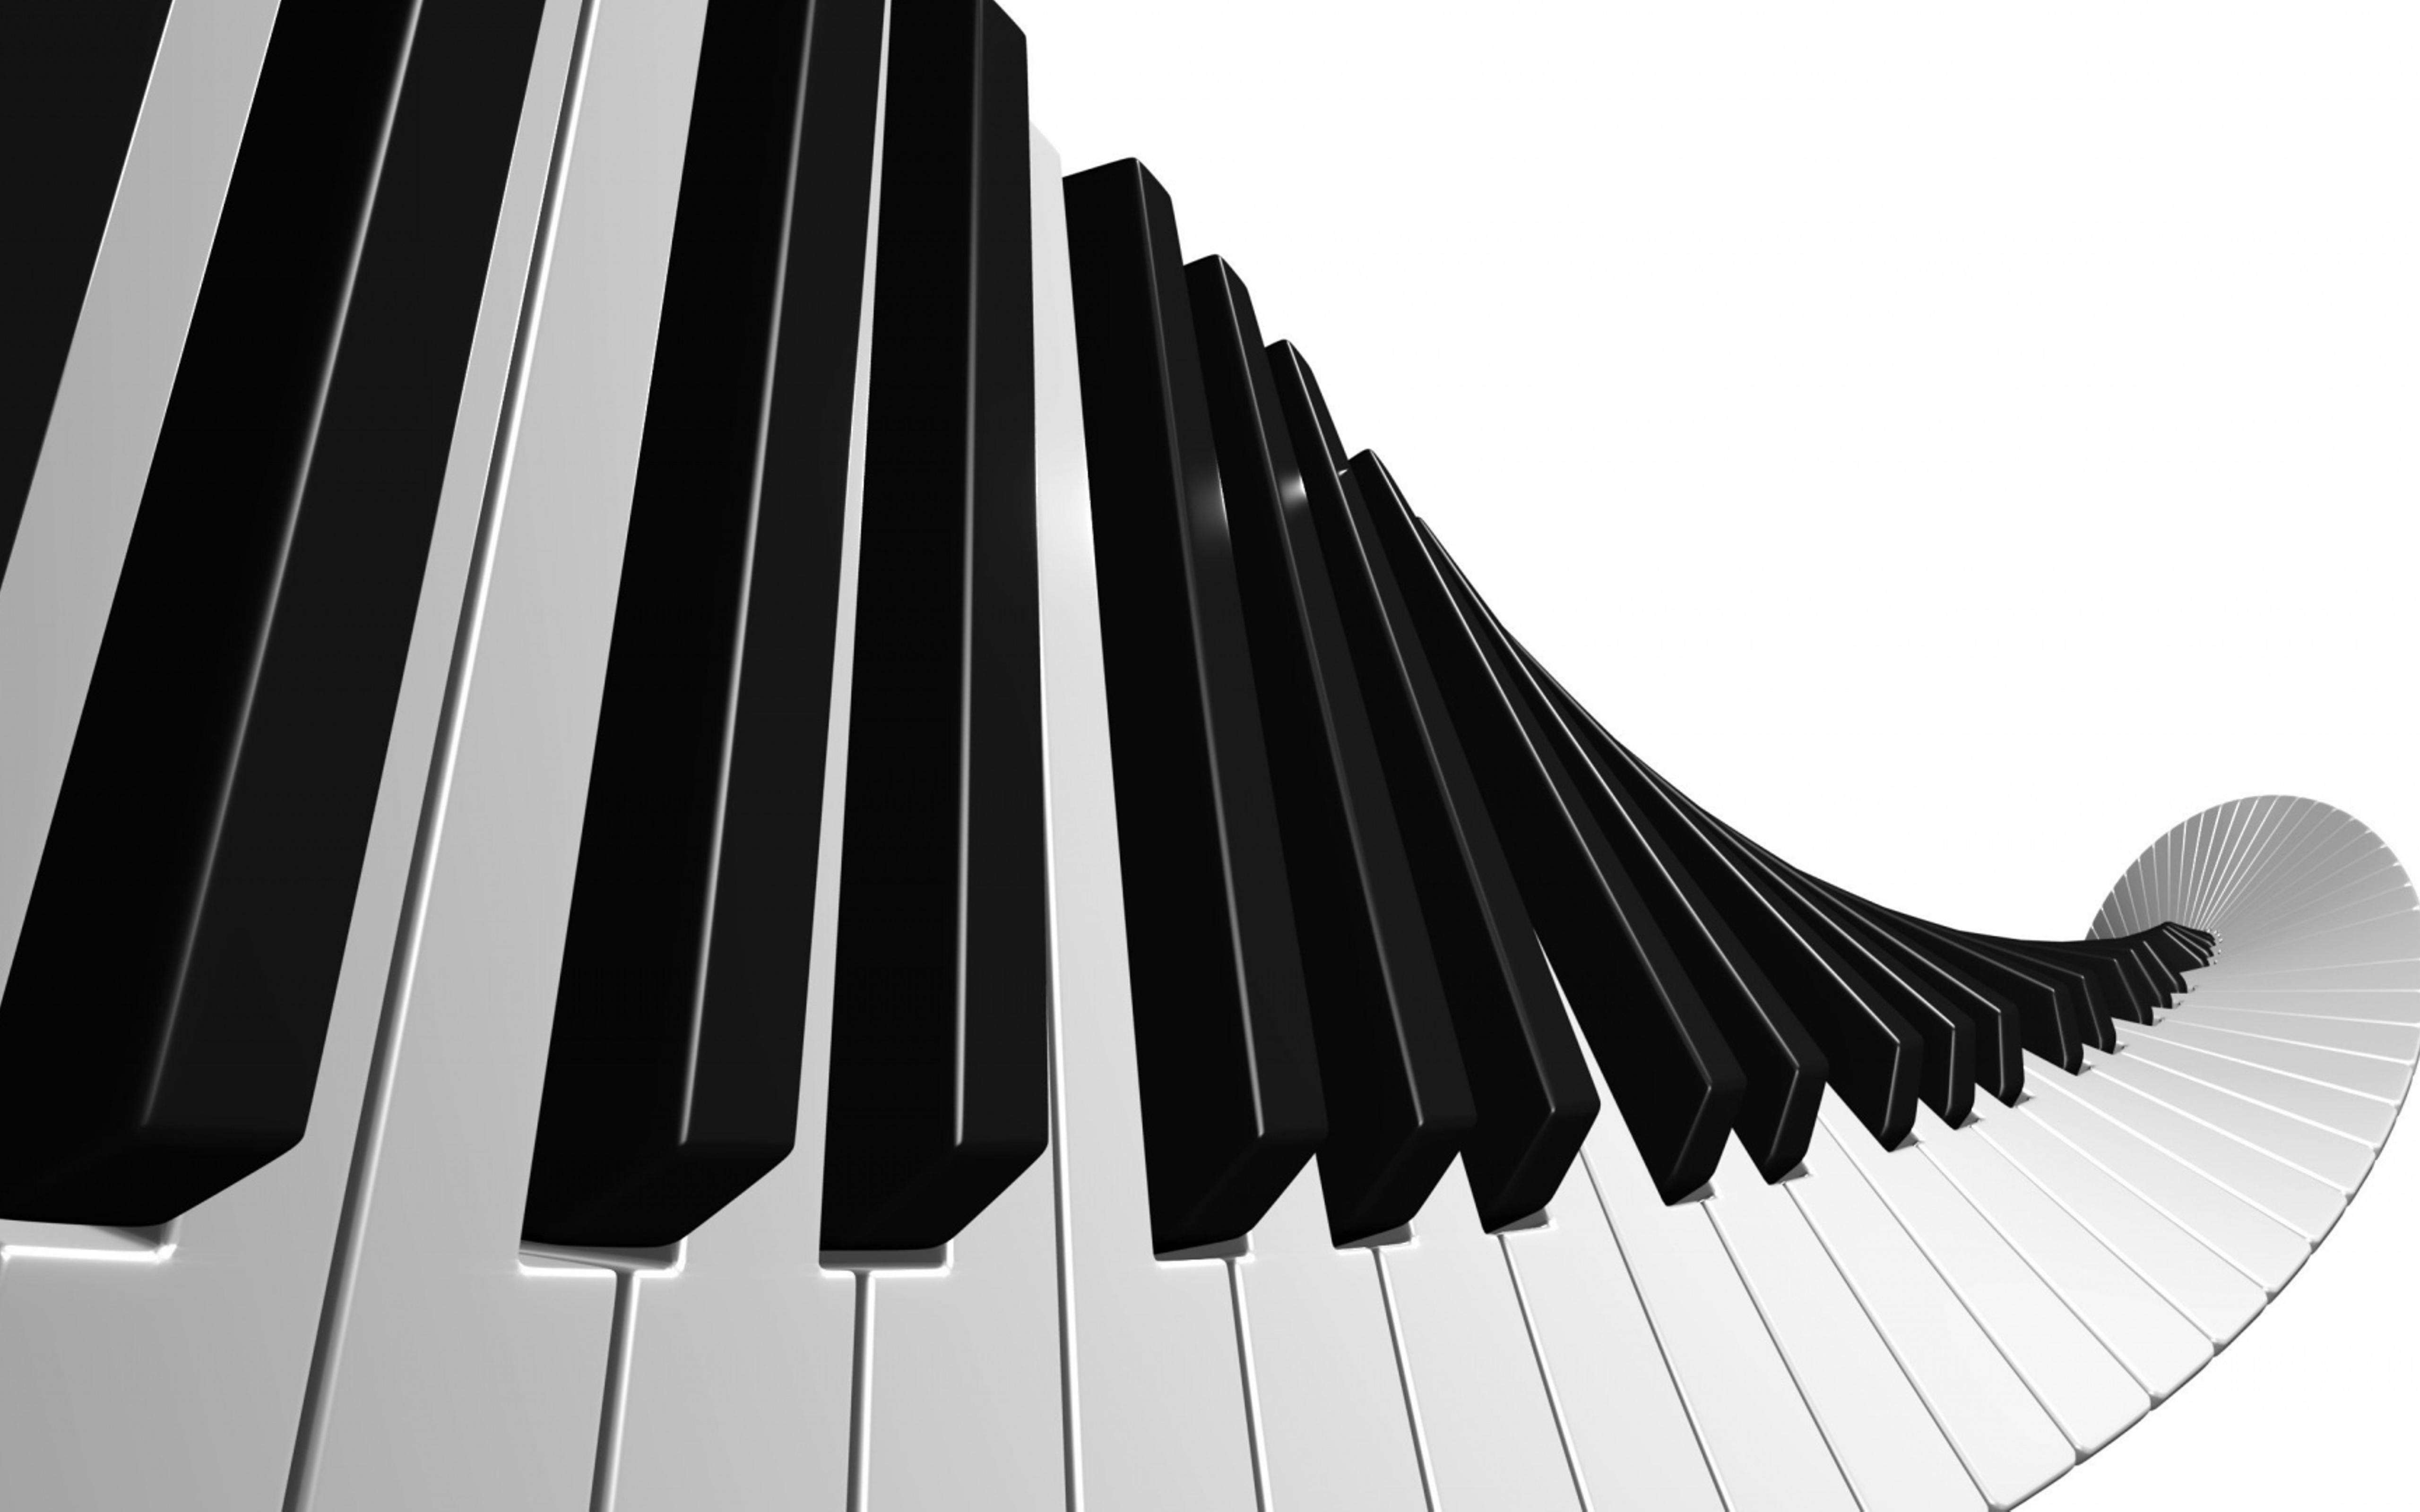 Abstract piano keys and black wallpaper